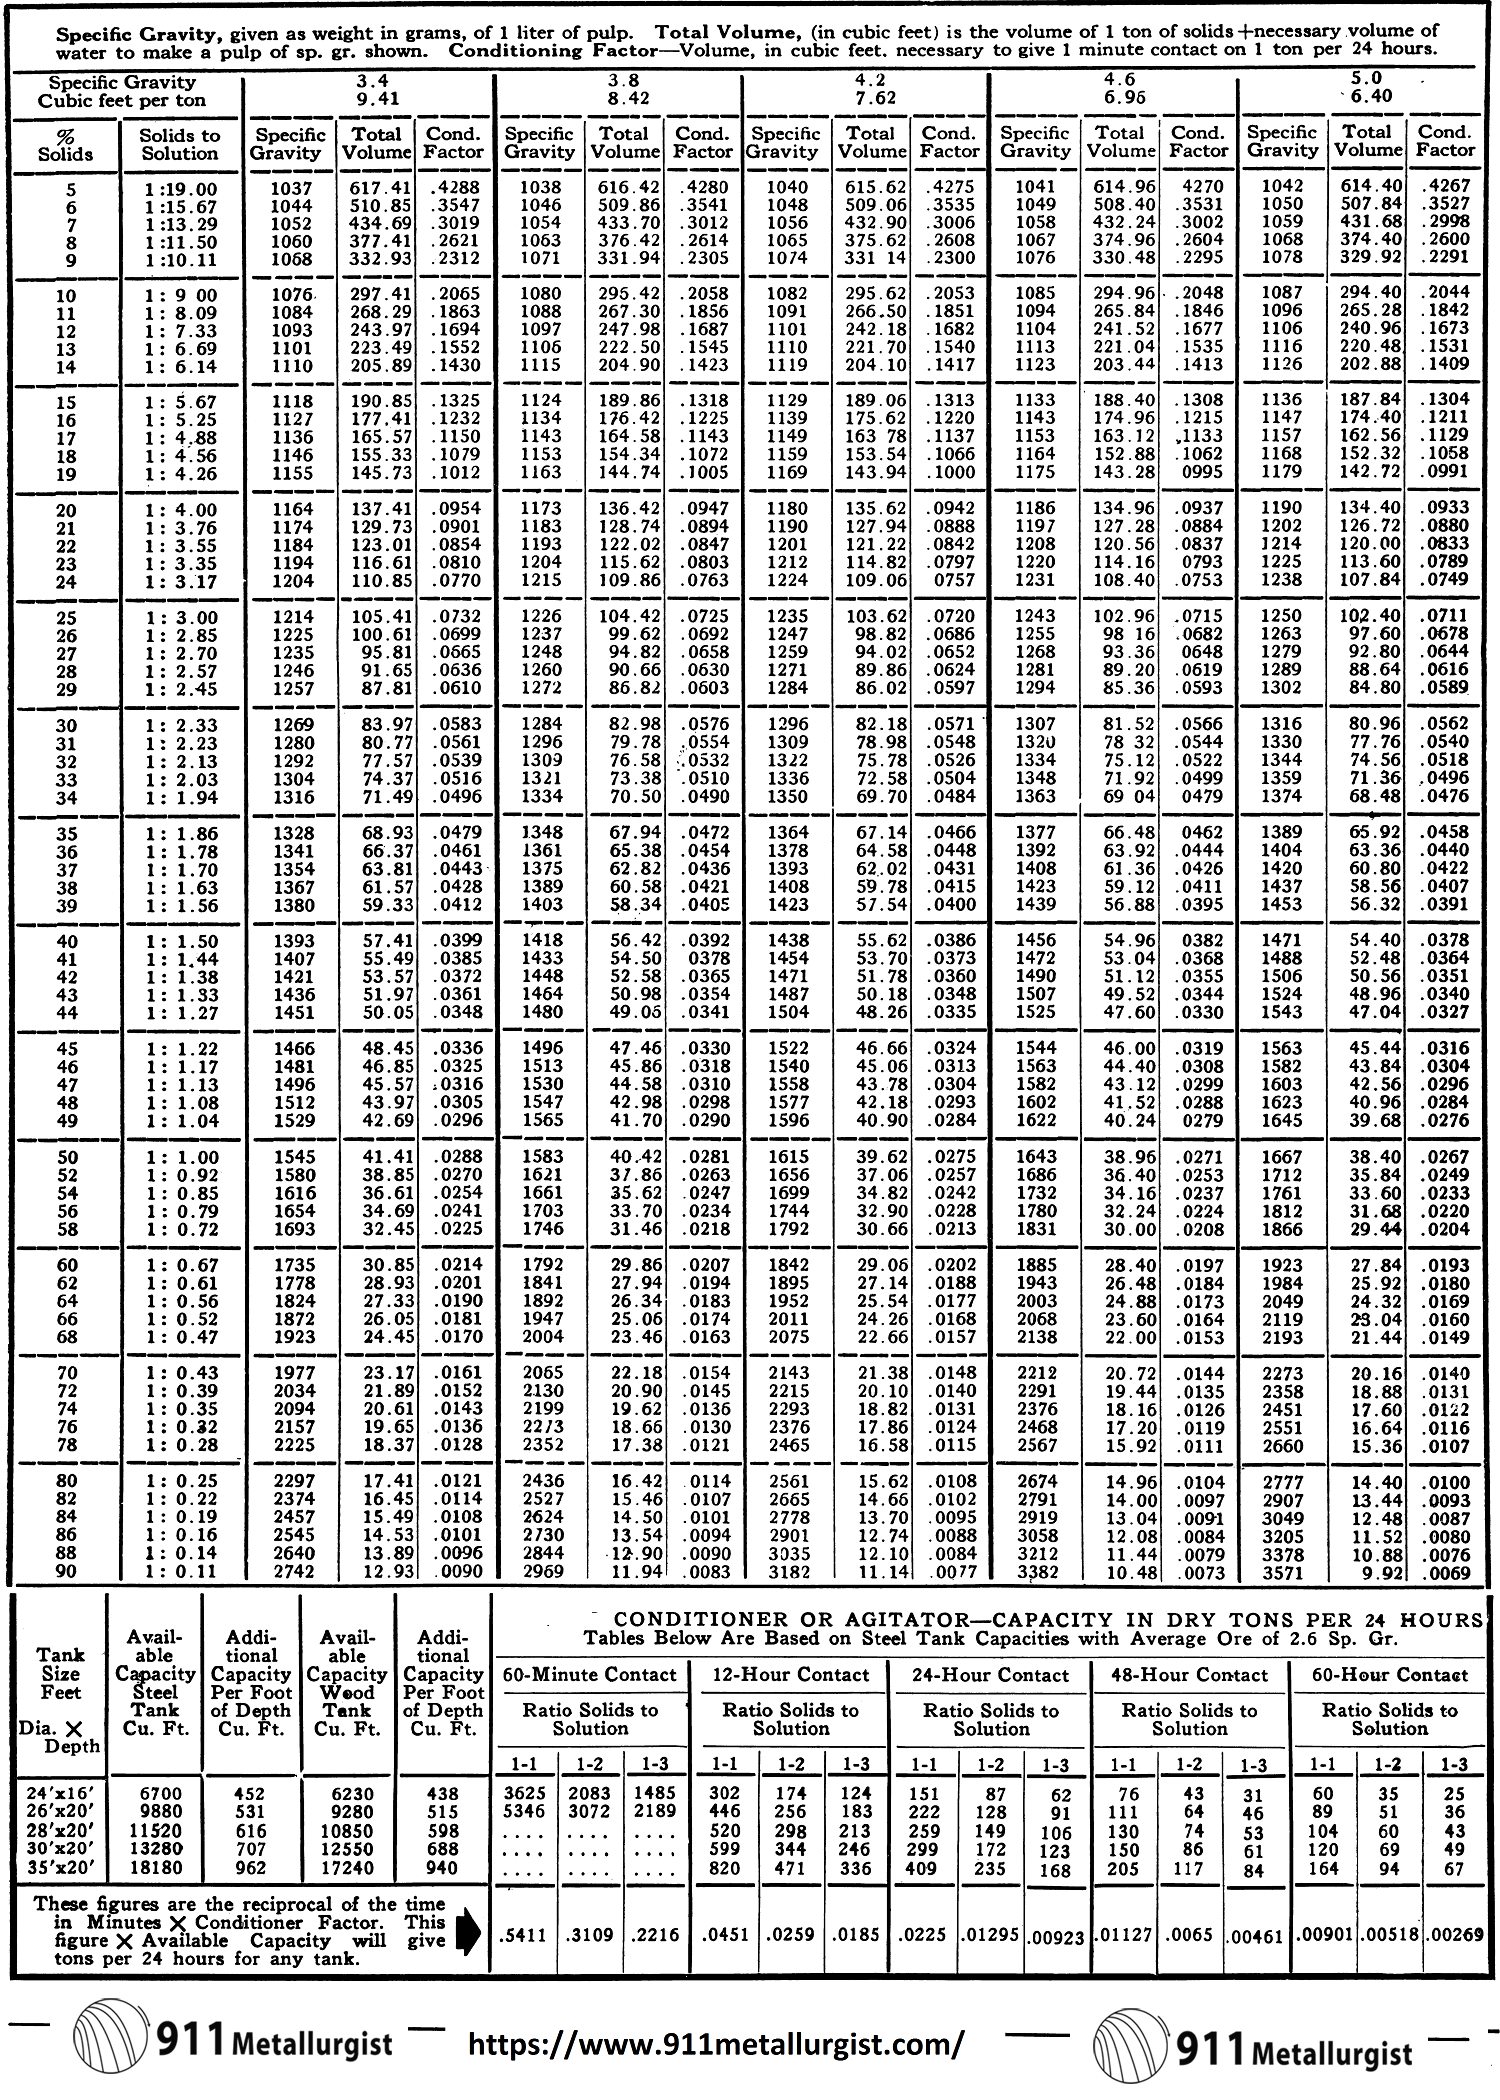 Pulp-Density-Tables-SG-3.4-5